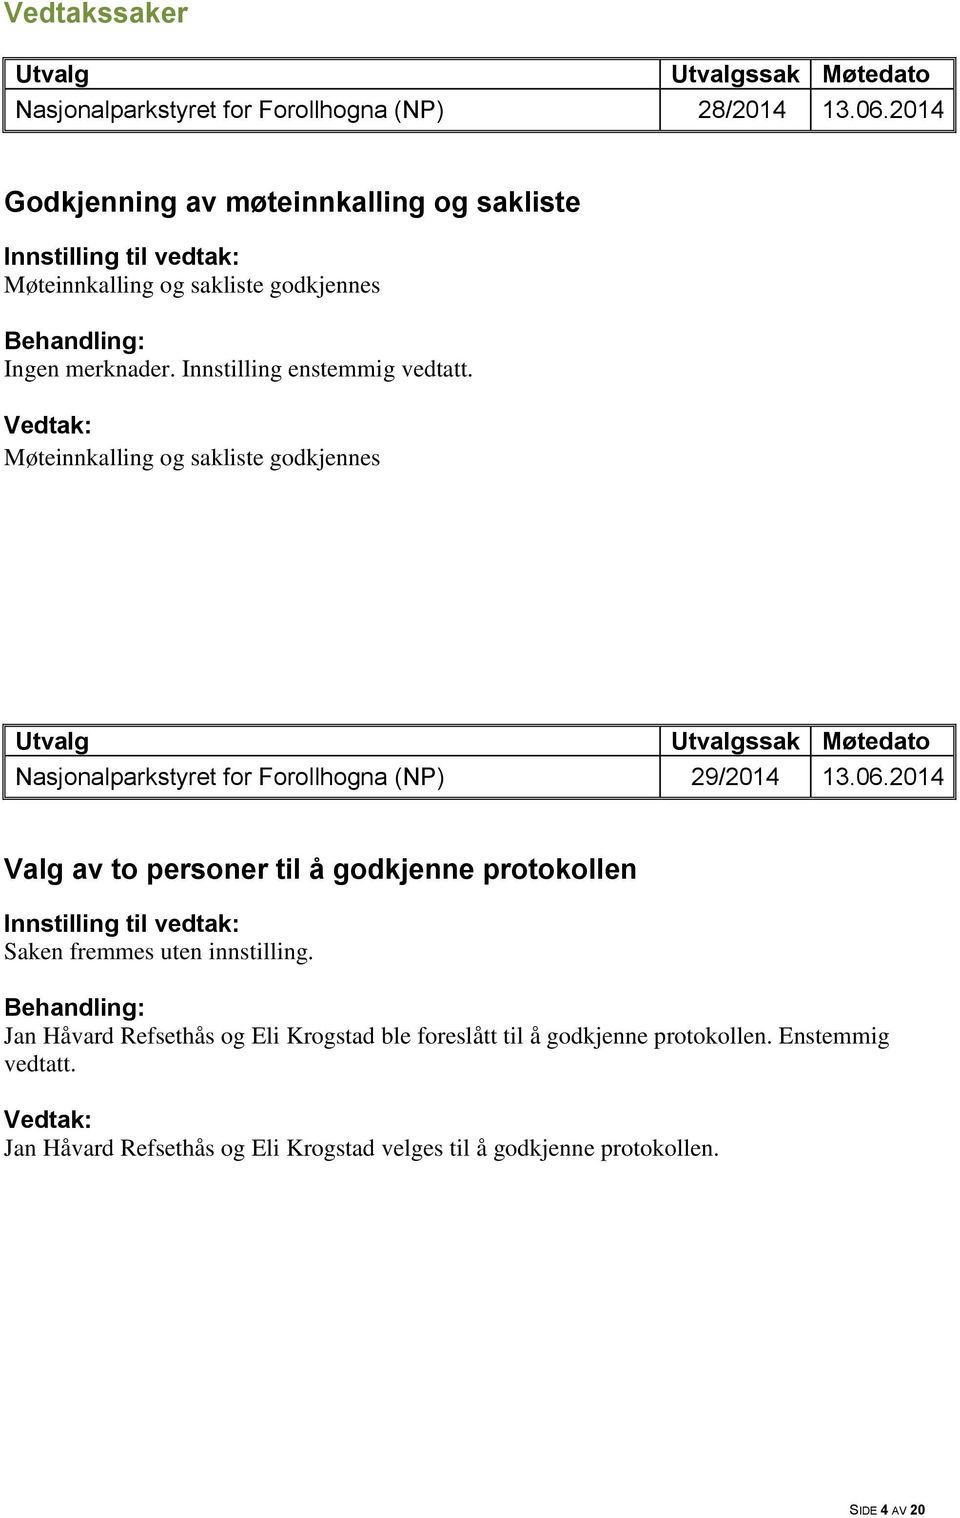 Innstilling enstemmig vedtatt. Møteinnkalling og sakliste godkjennes ssak Møtedato Nasjonalparkstyret for Forollhogna (NP) 29/2014 13.06.